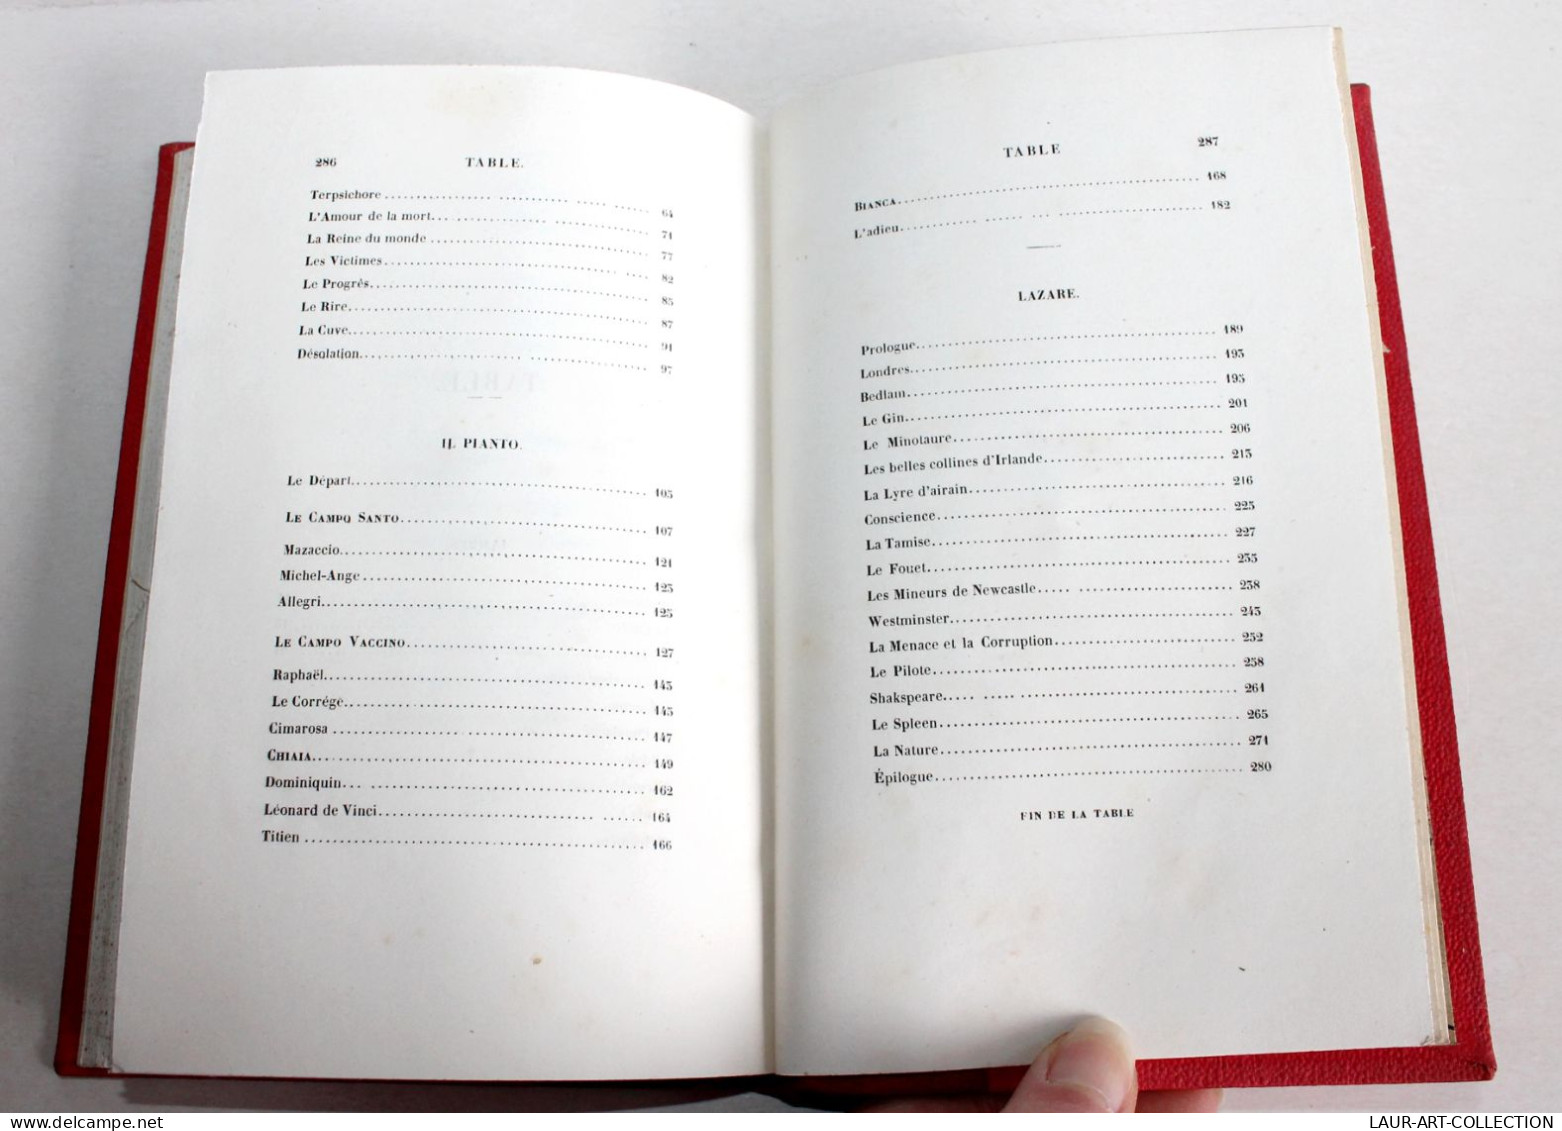 LAMBES ET POEMES Par AUGUSTE BARBIER, 4e EDITION 1841 MASGANA, POESIE / ANCIEN LIVRE XIXe SIECLE (1803.50) - Franse Schrijvers